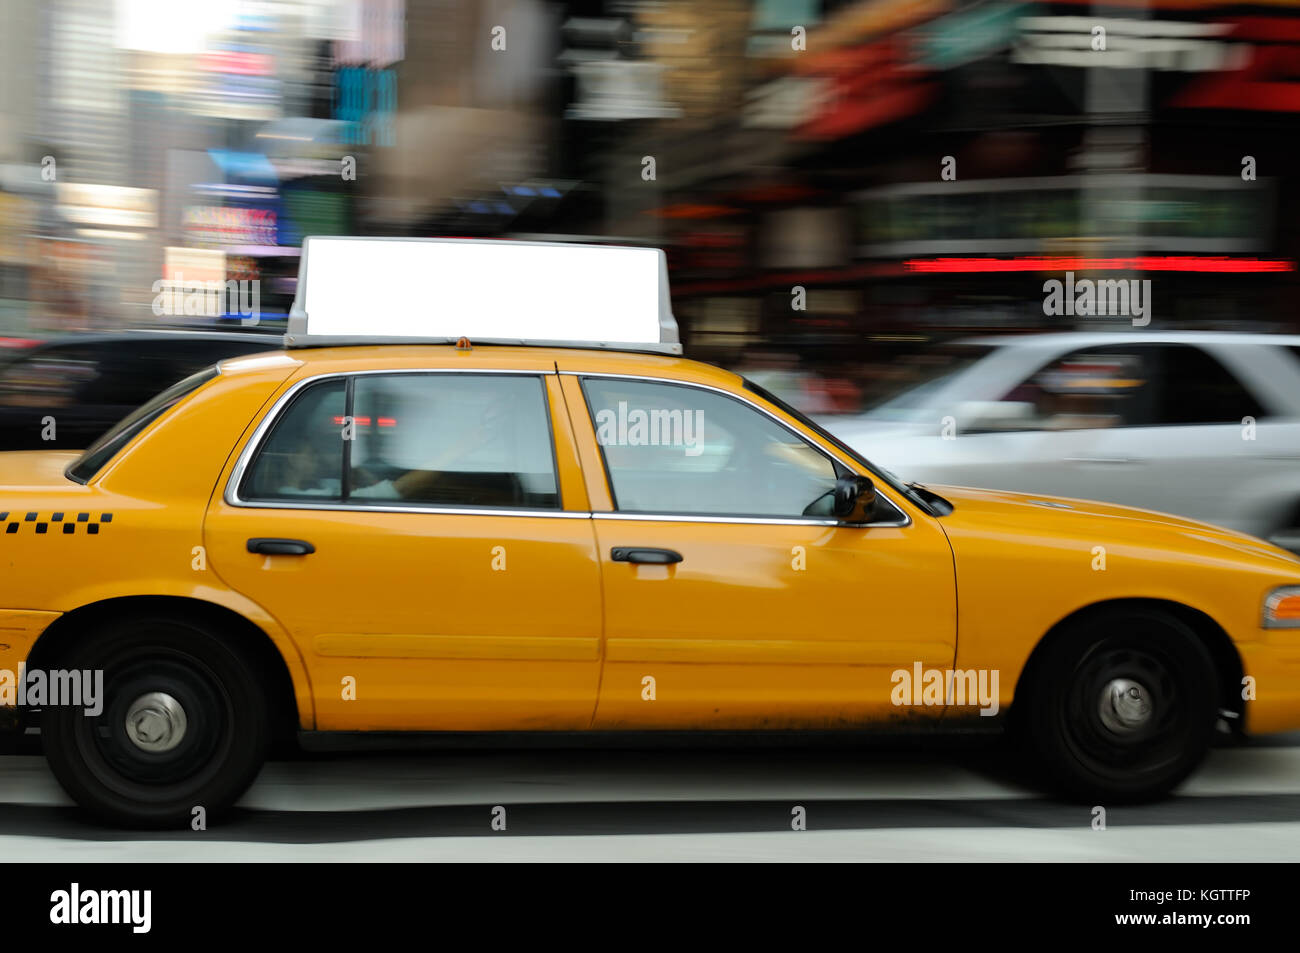 Haut publicité de taxi à Times square, new york city. Écran vide sur taxi jaune, l'arrière-plan flou Banque D'Images